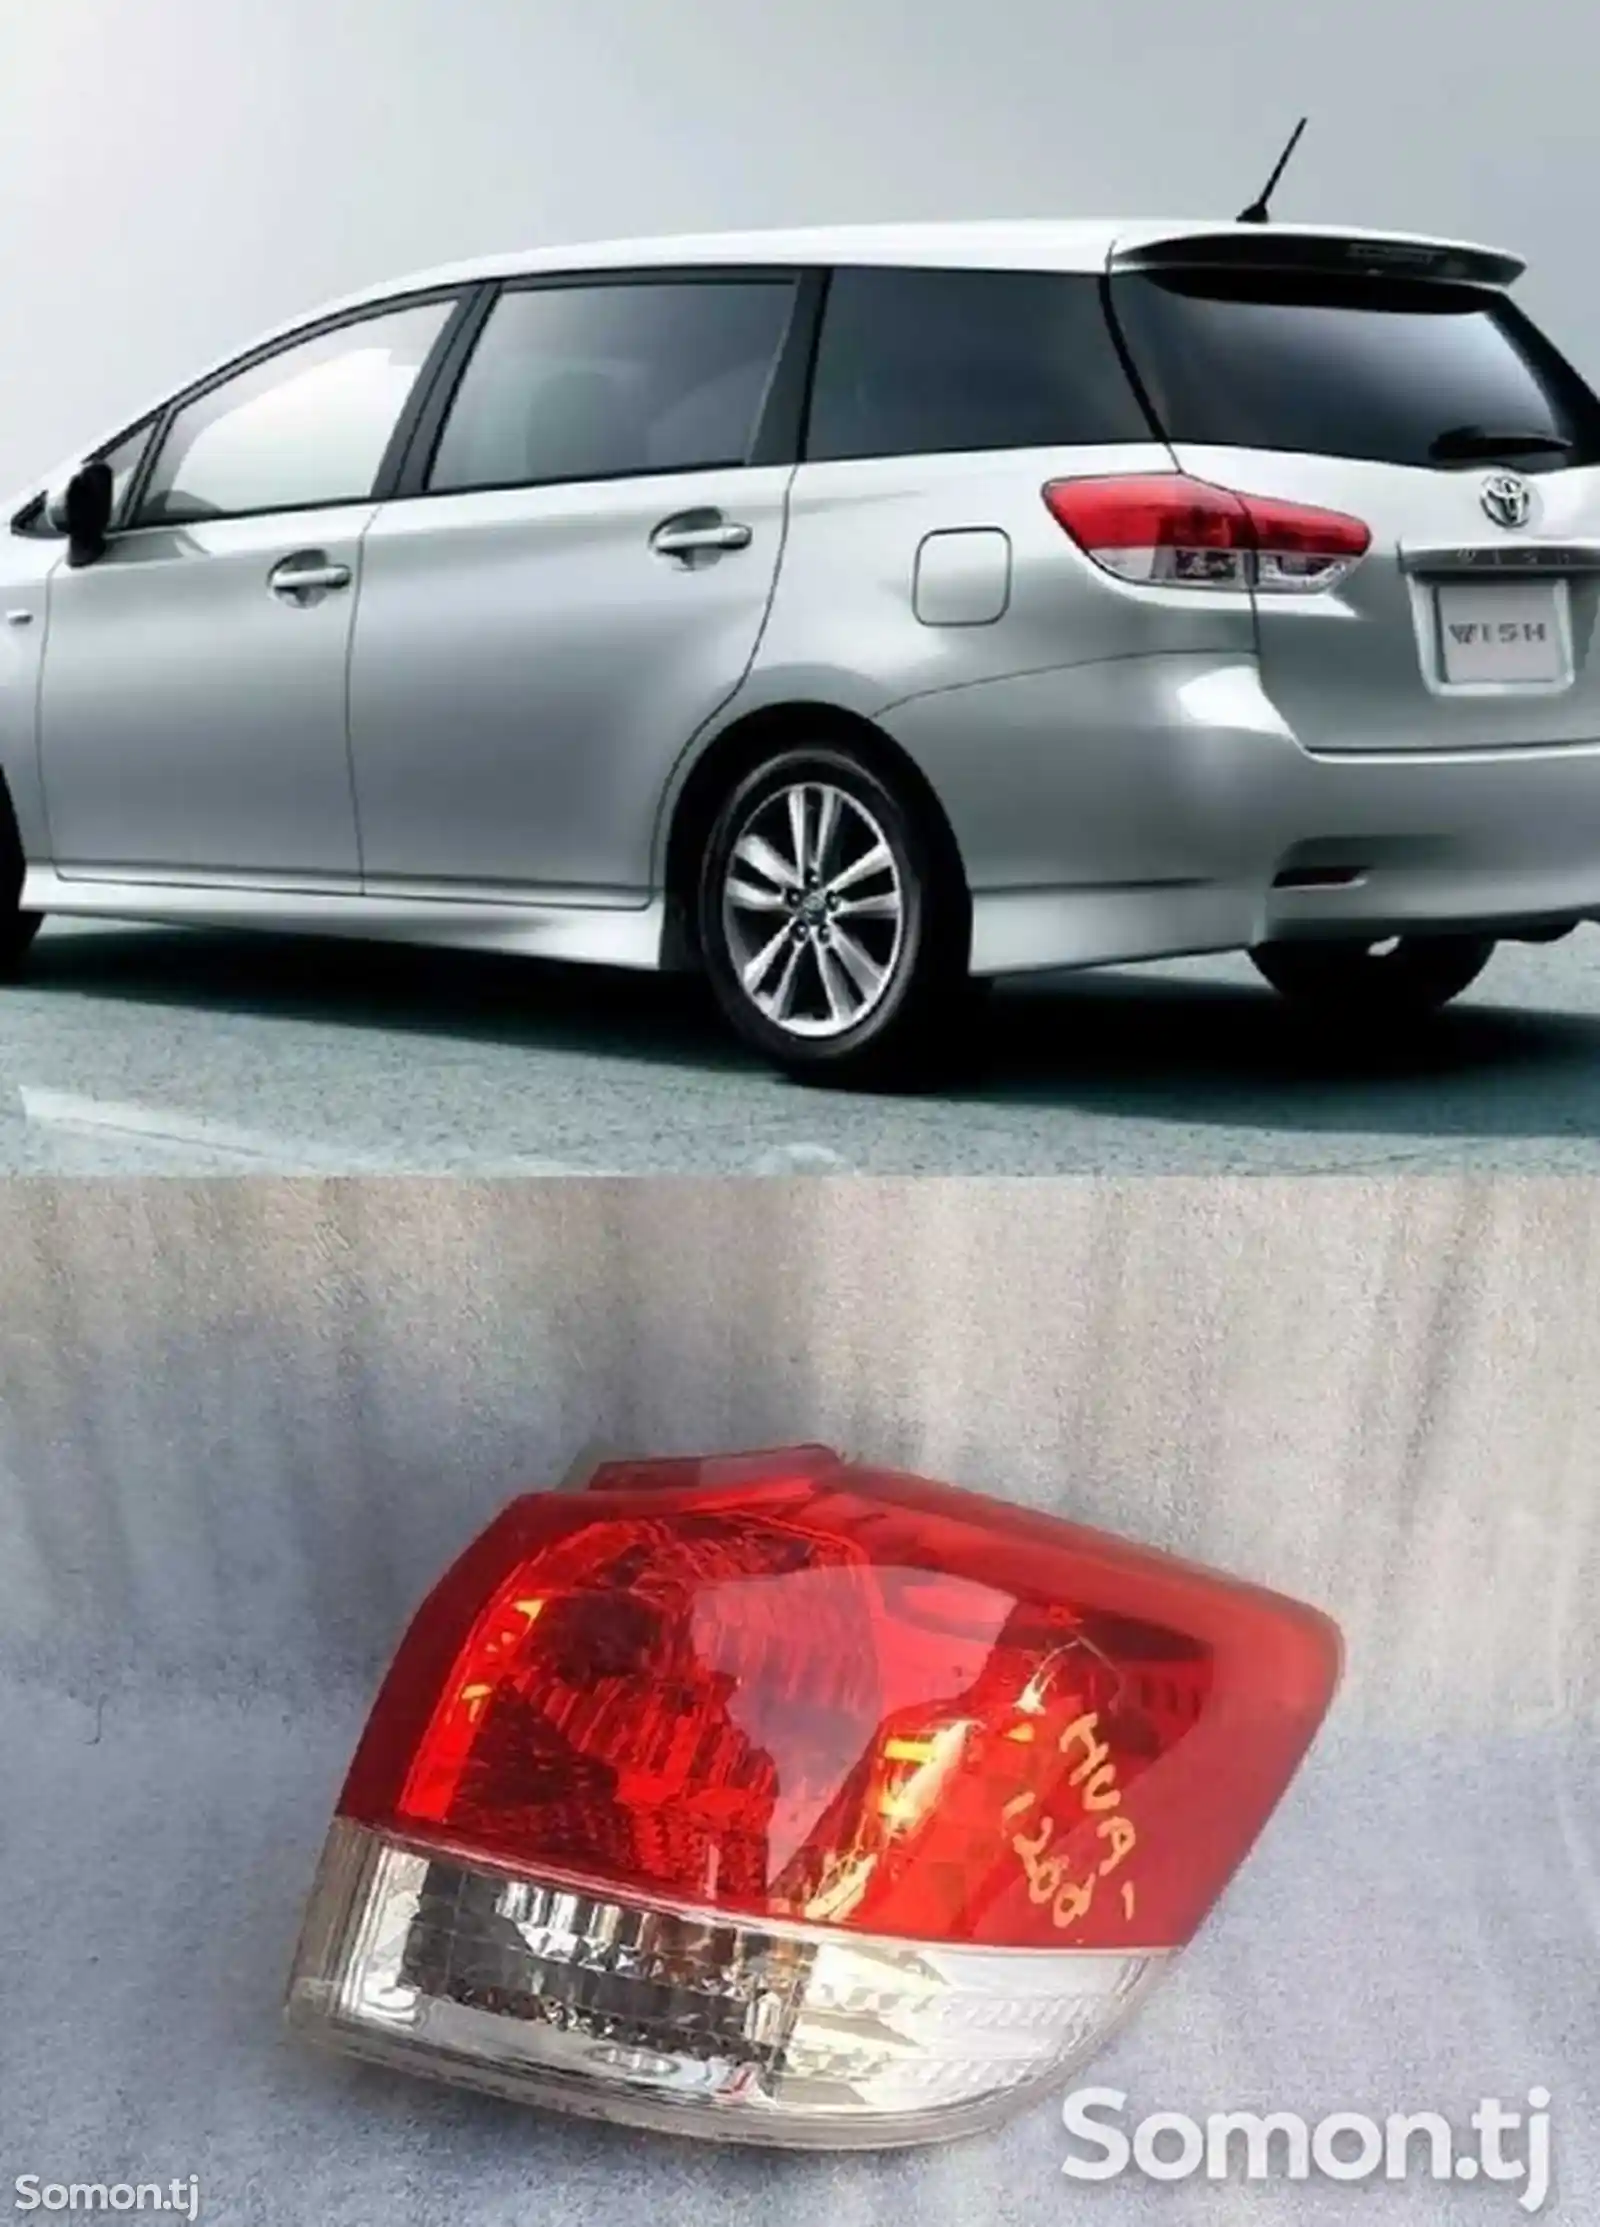 Задние фары от Toyota Wish-1